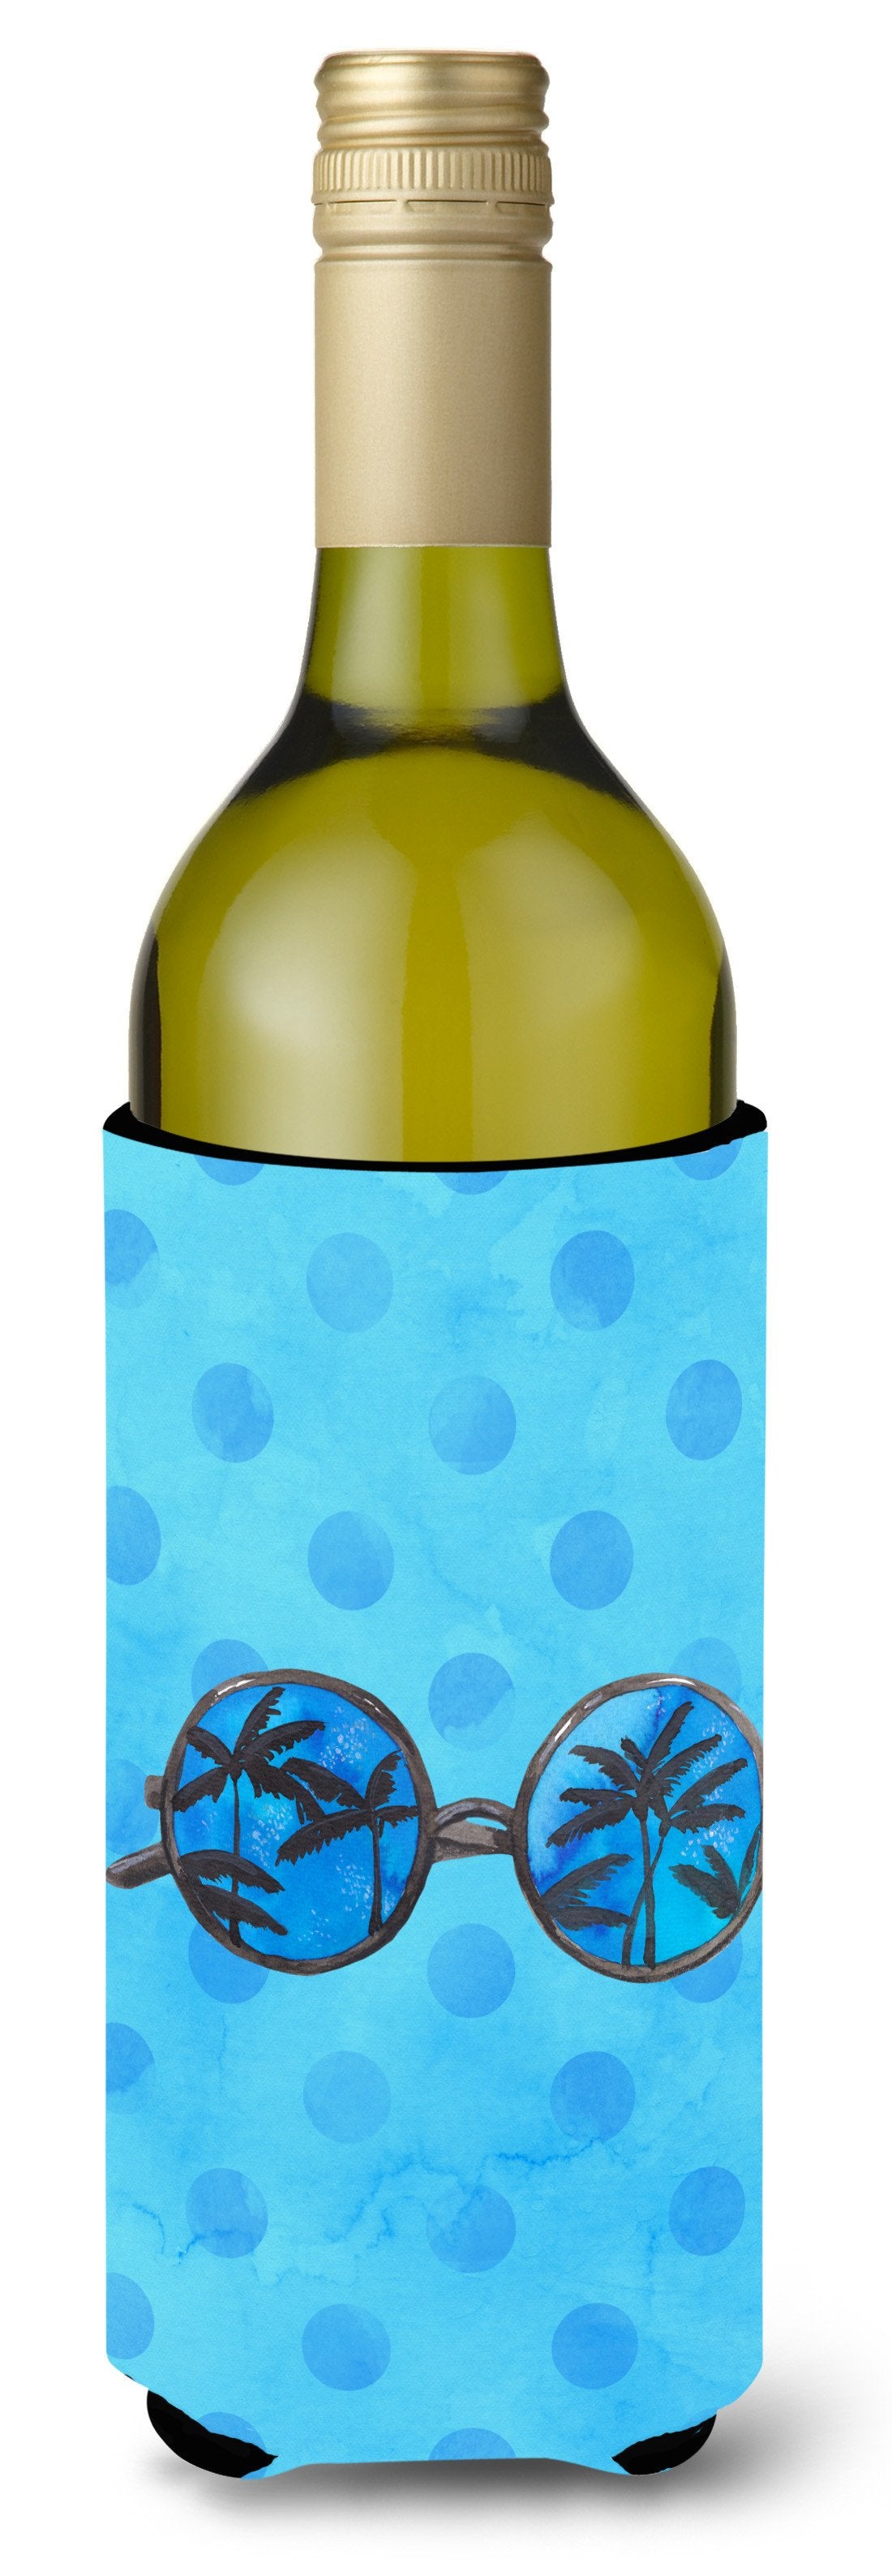 Sunglasses Blue Polkadot Wine Bottle Beverge Insulator Hugger BB8176LITERK by Caroline's Treasures